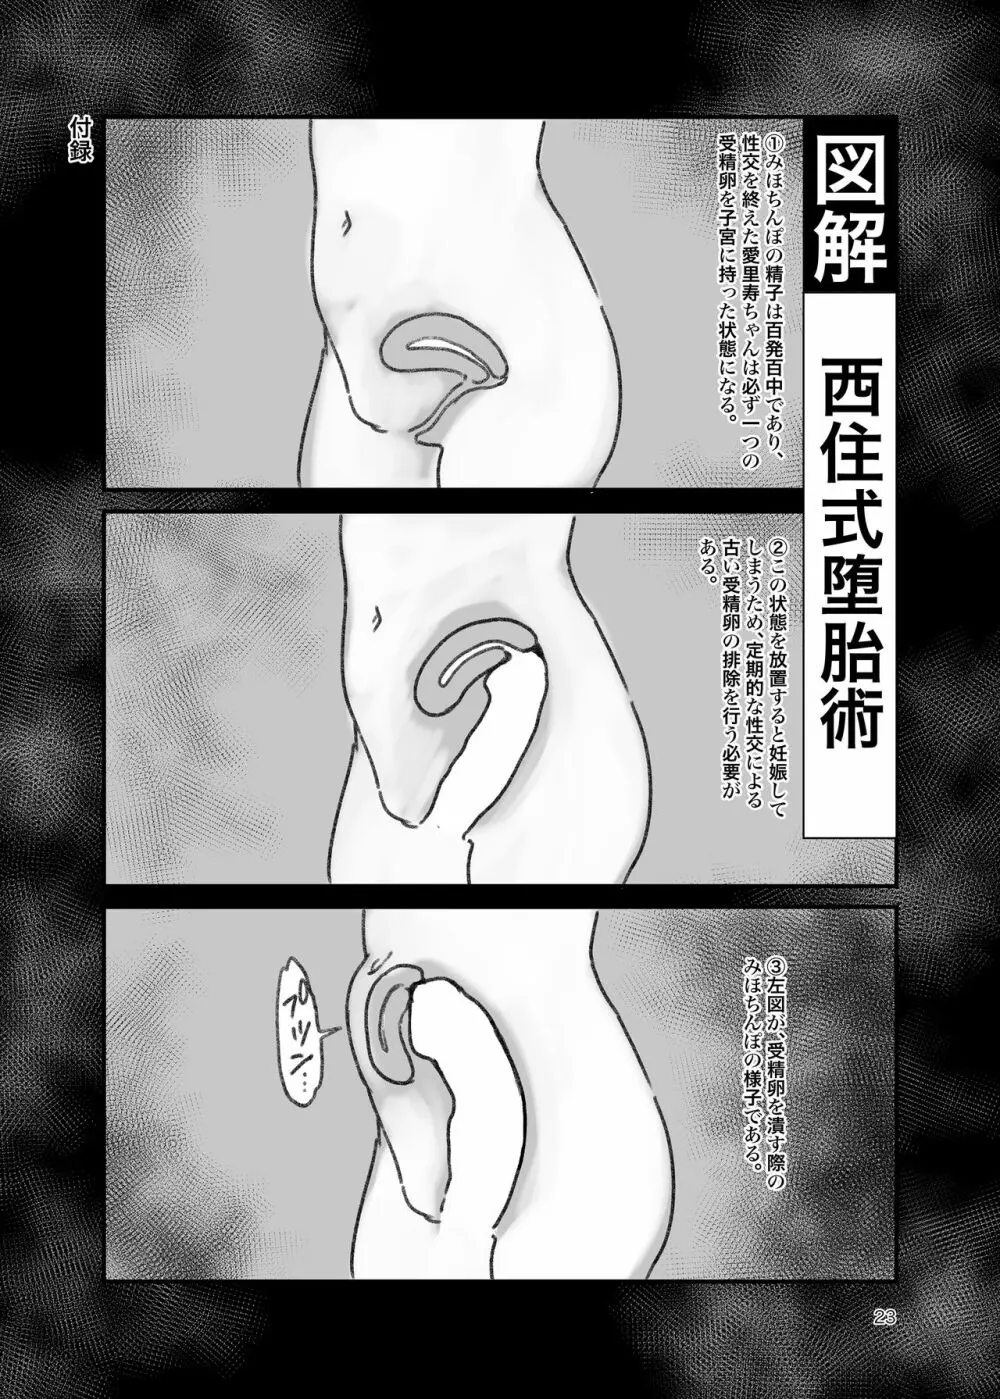 ちんぽやくざみぽりん ボコマゾ愛里寿ちゃん編 - page22